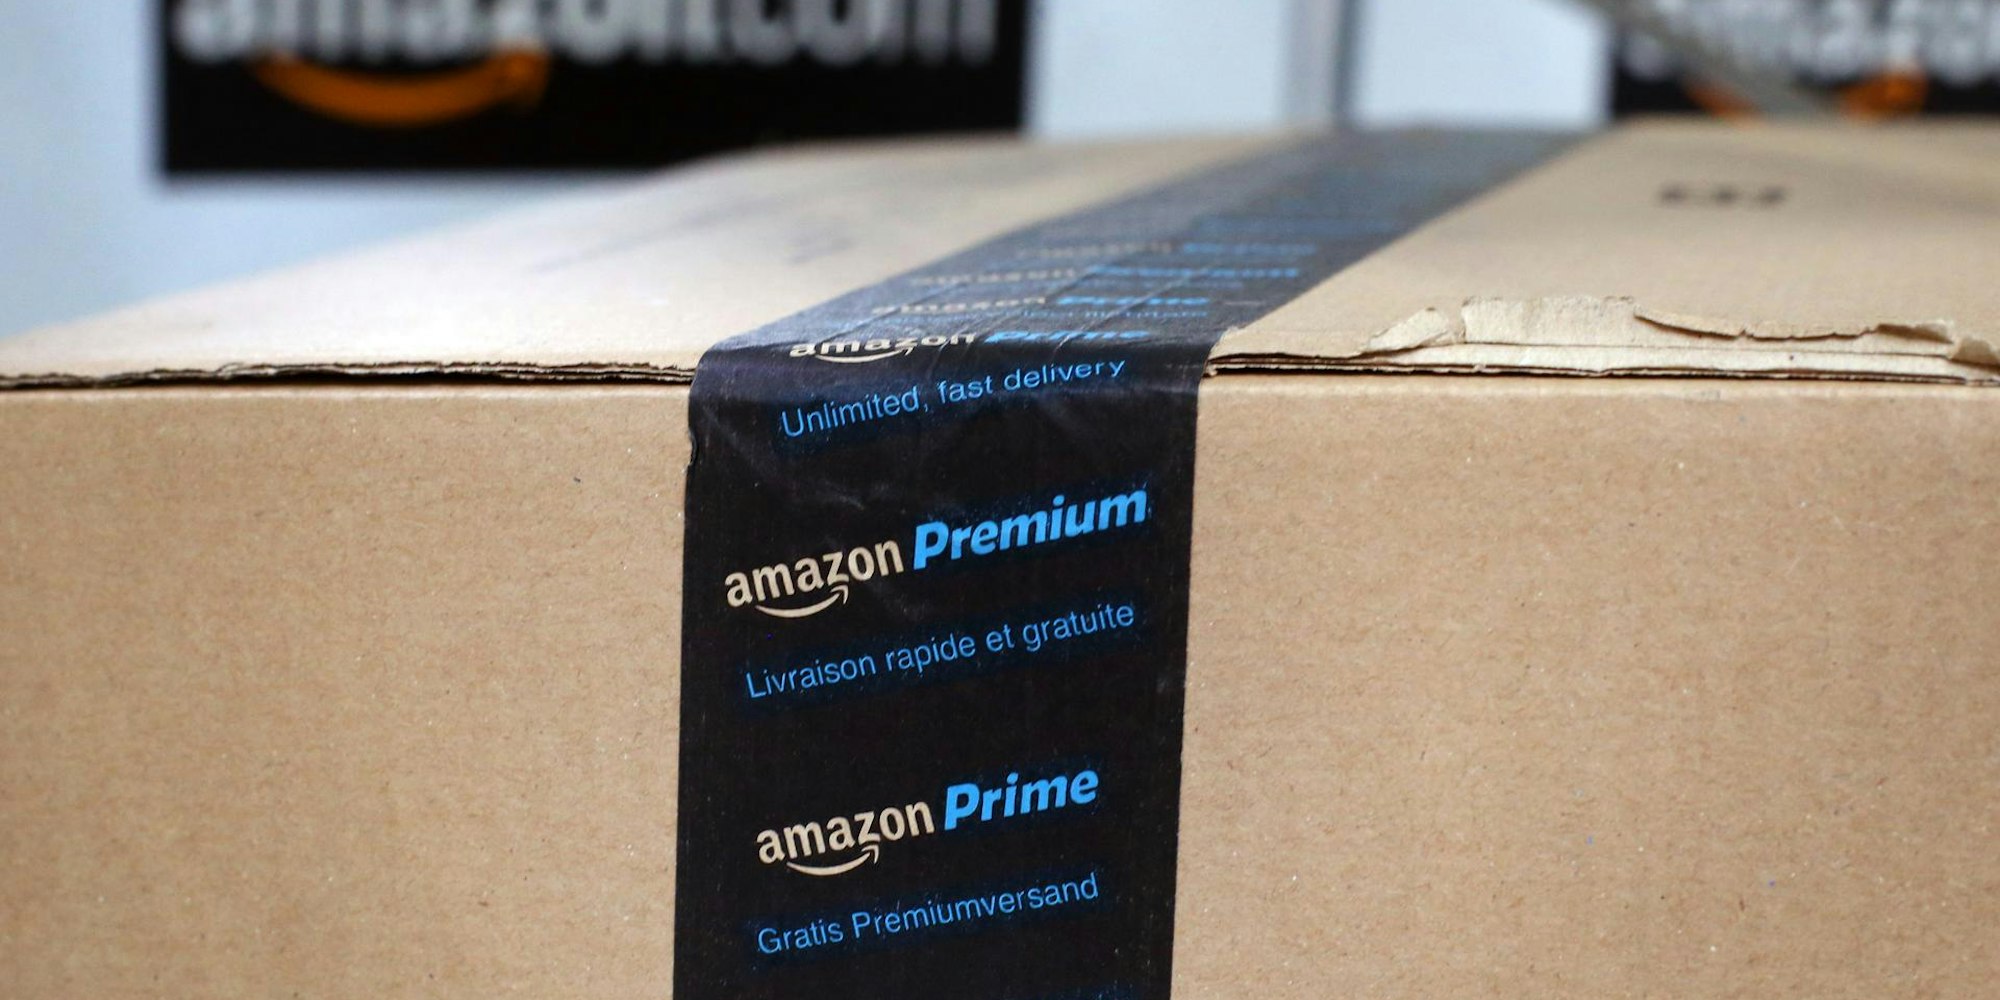 Amazon_Prime_dpa